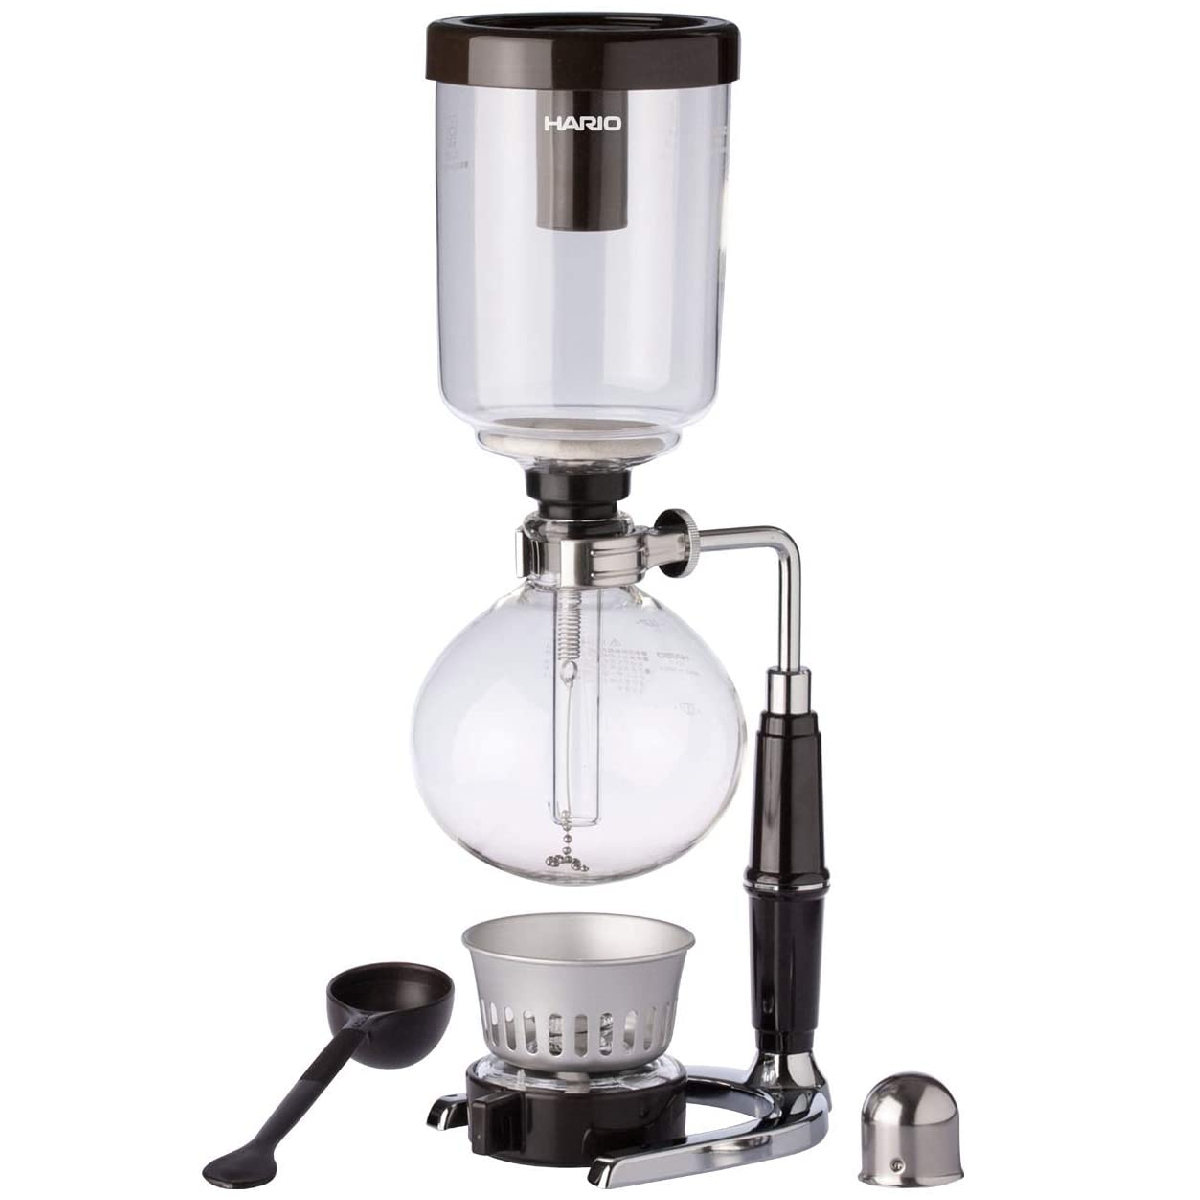 Hario Glass Technica Syphon Coffee Maker